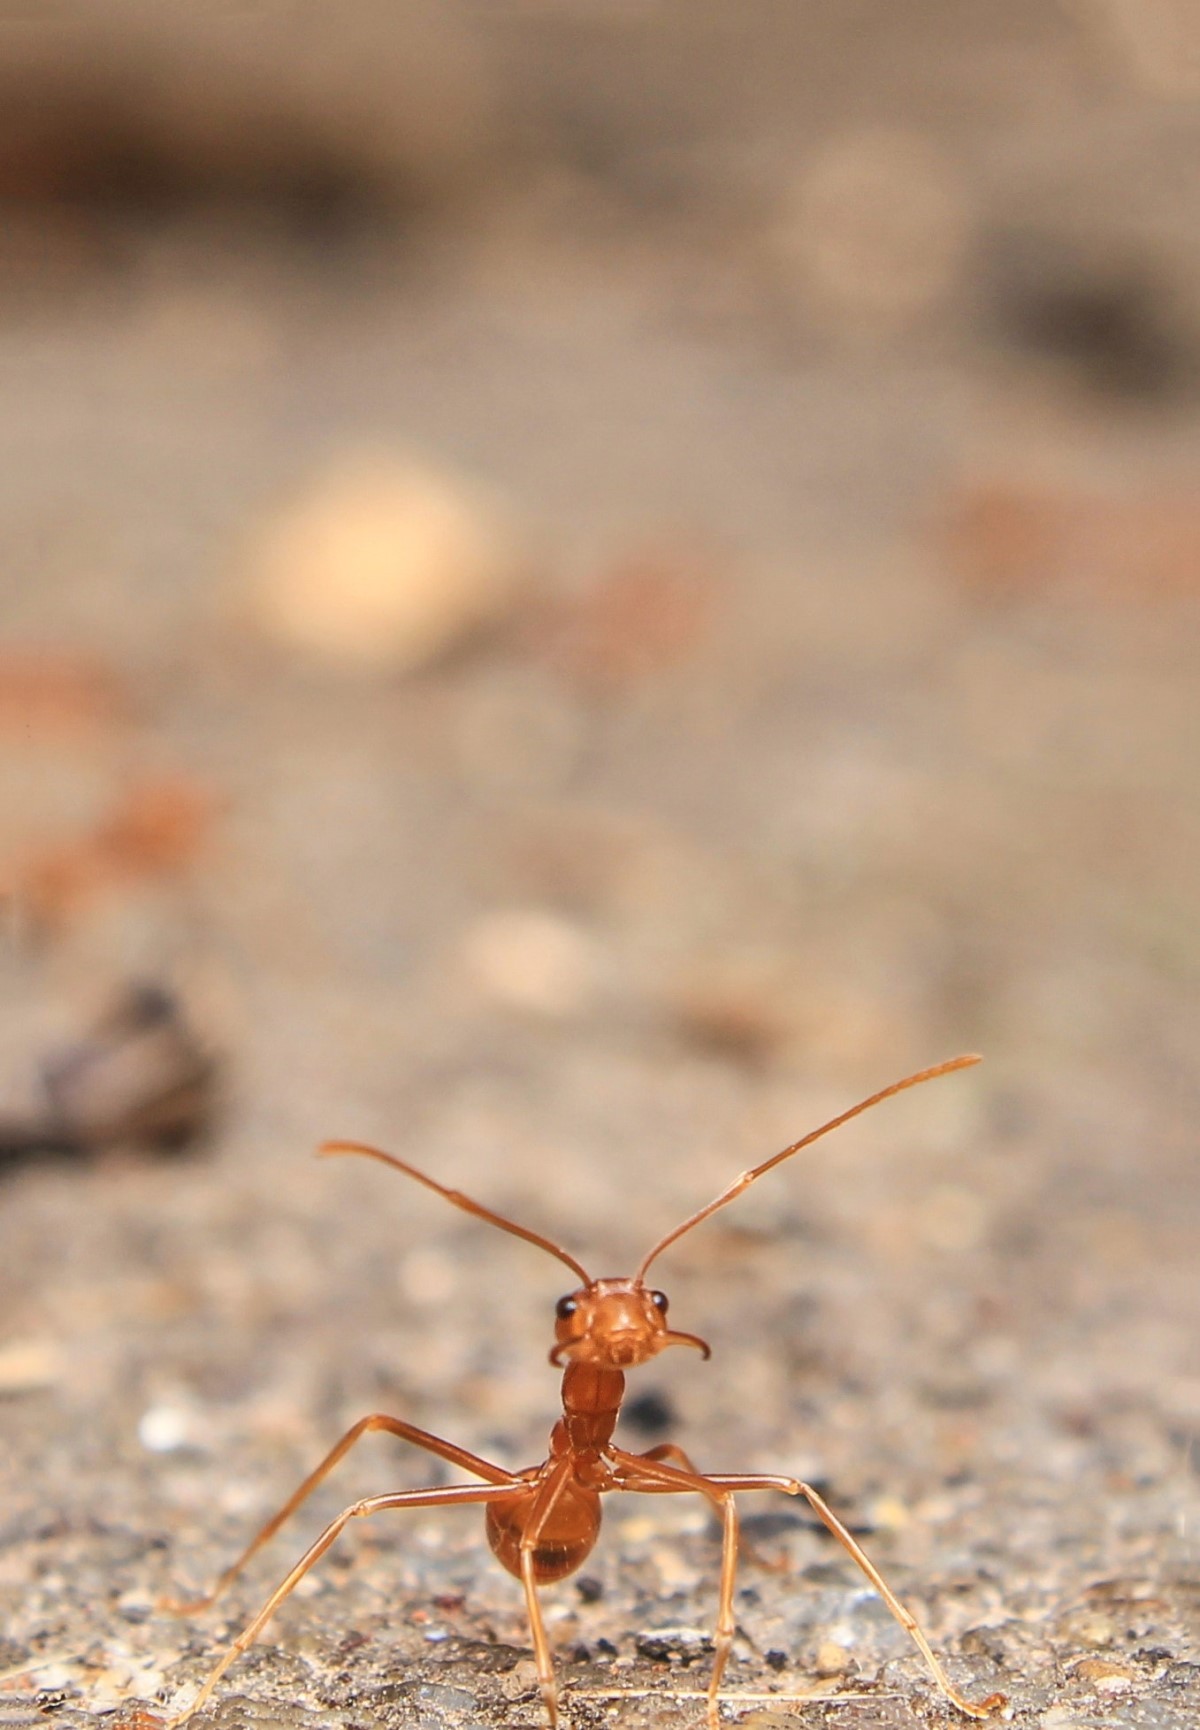 Uma solução encontrada pelas acácias é abrigar um exército de formigas. A árvore fornece abrigo e alimento, e a formiga faz a segurança (Foto: Pexels / prasanthdas ds / CreativeCommons)